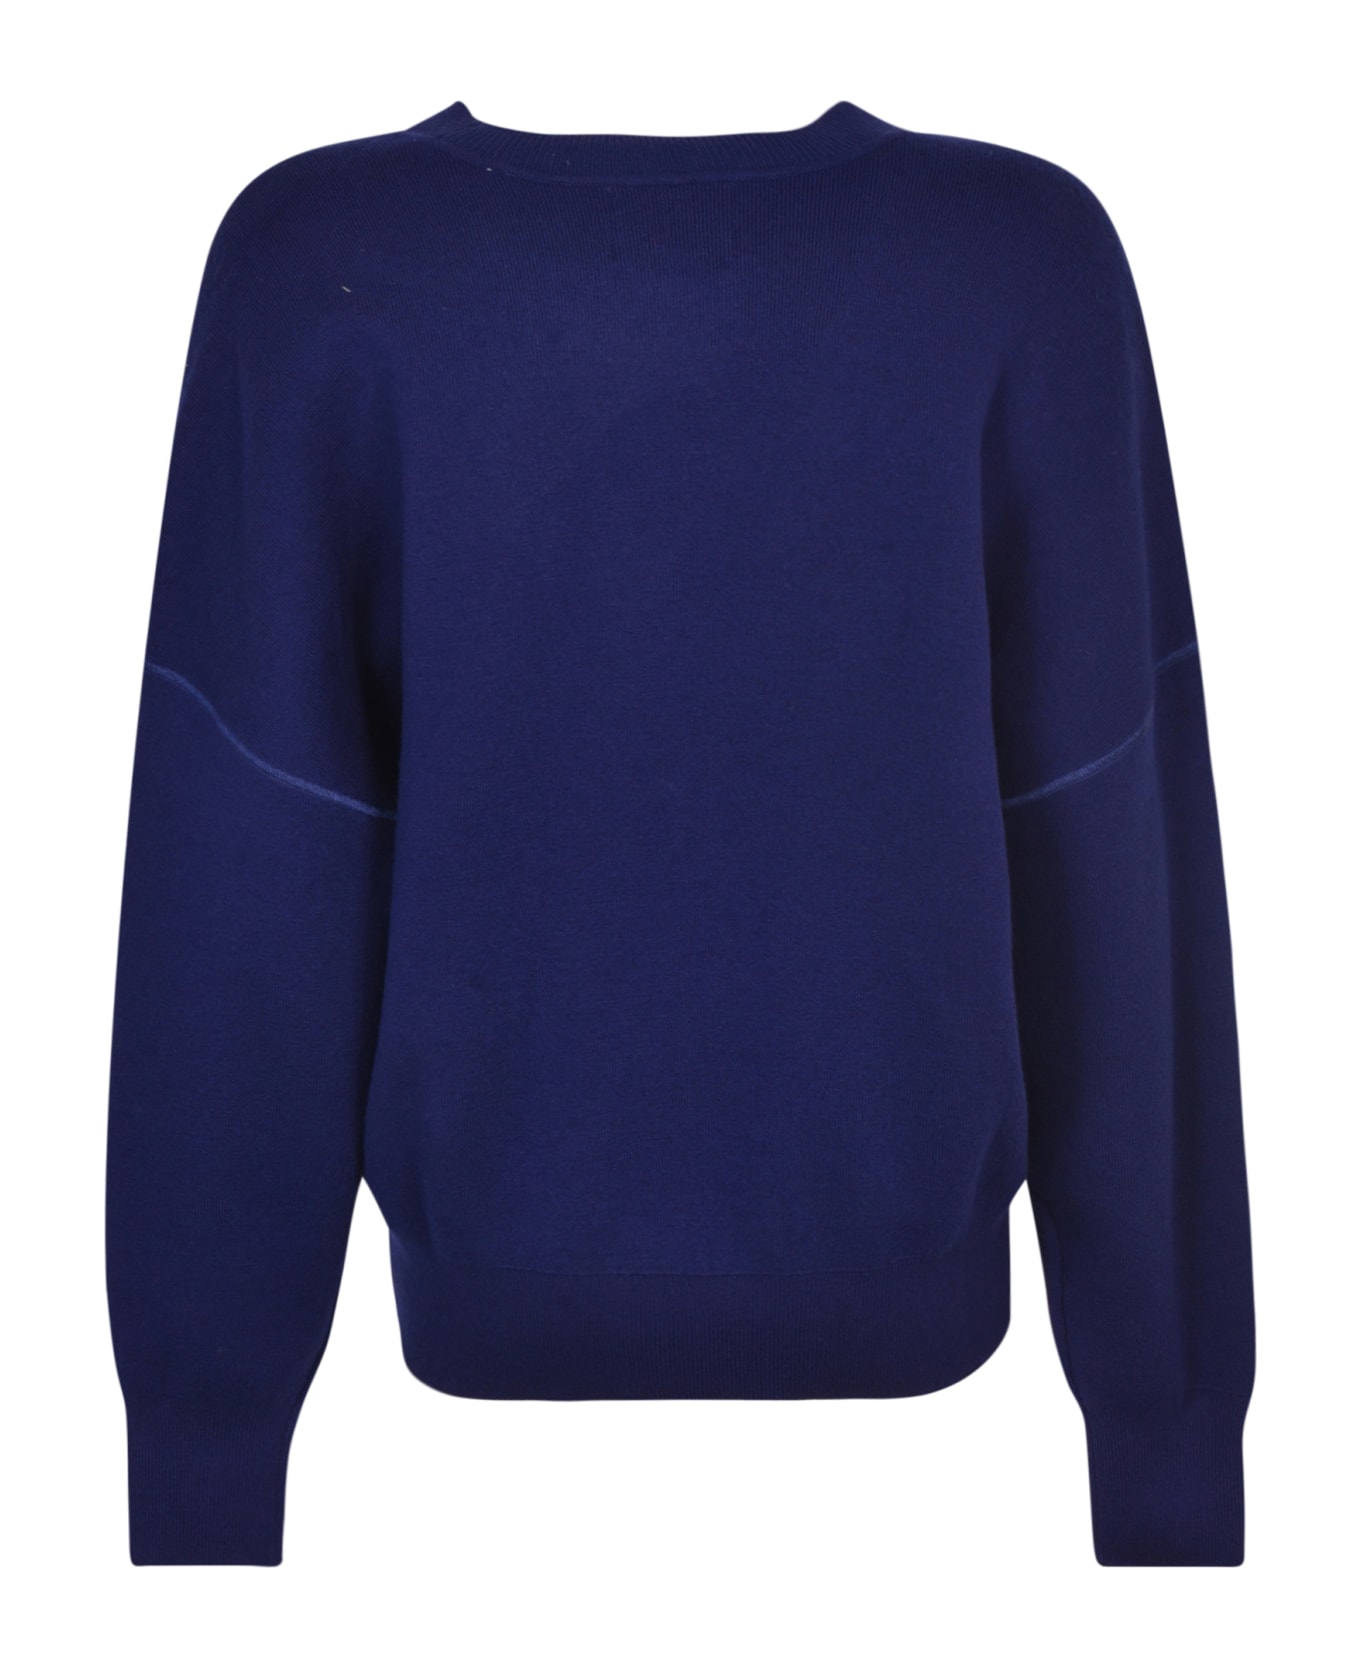 Marant Étoile Atlee Sweater - Blue